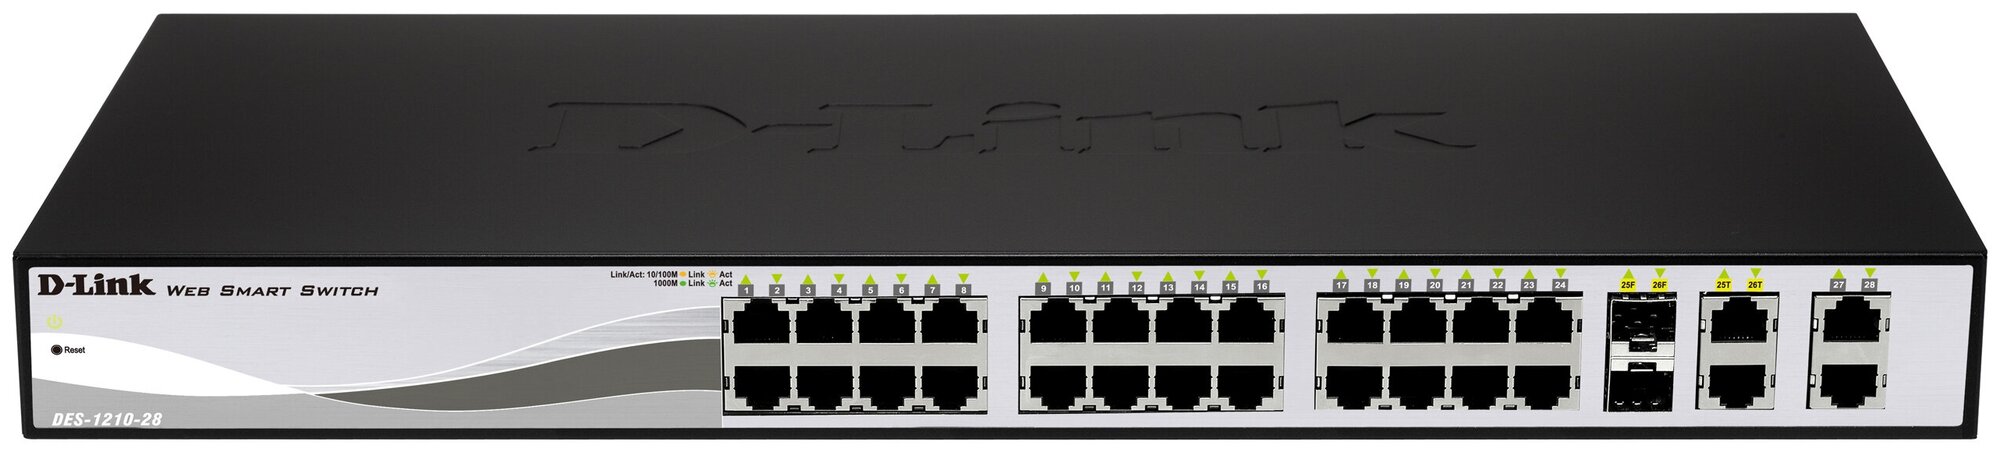 Коммутатор D-Link DES-1210-28P/C2A Настраиваемый коммутатор WebSmart с 24 портами 10/100Base-TX, 2 портами 10/100/1000BASE-T, 2 комбо-портами 100/1000